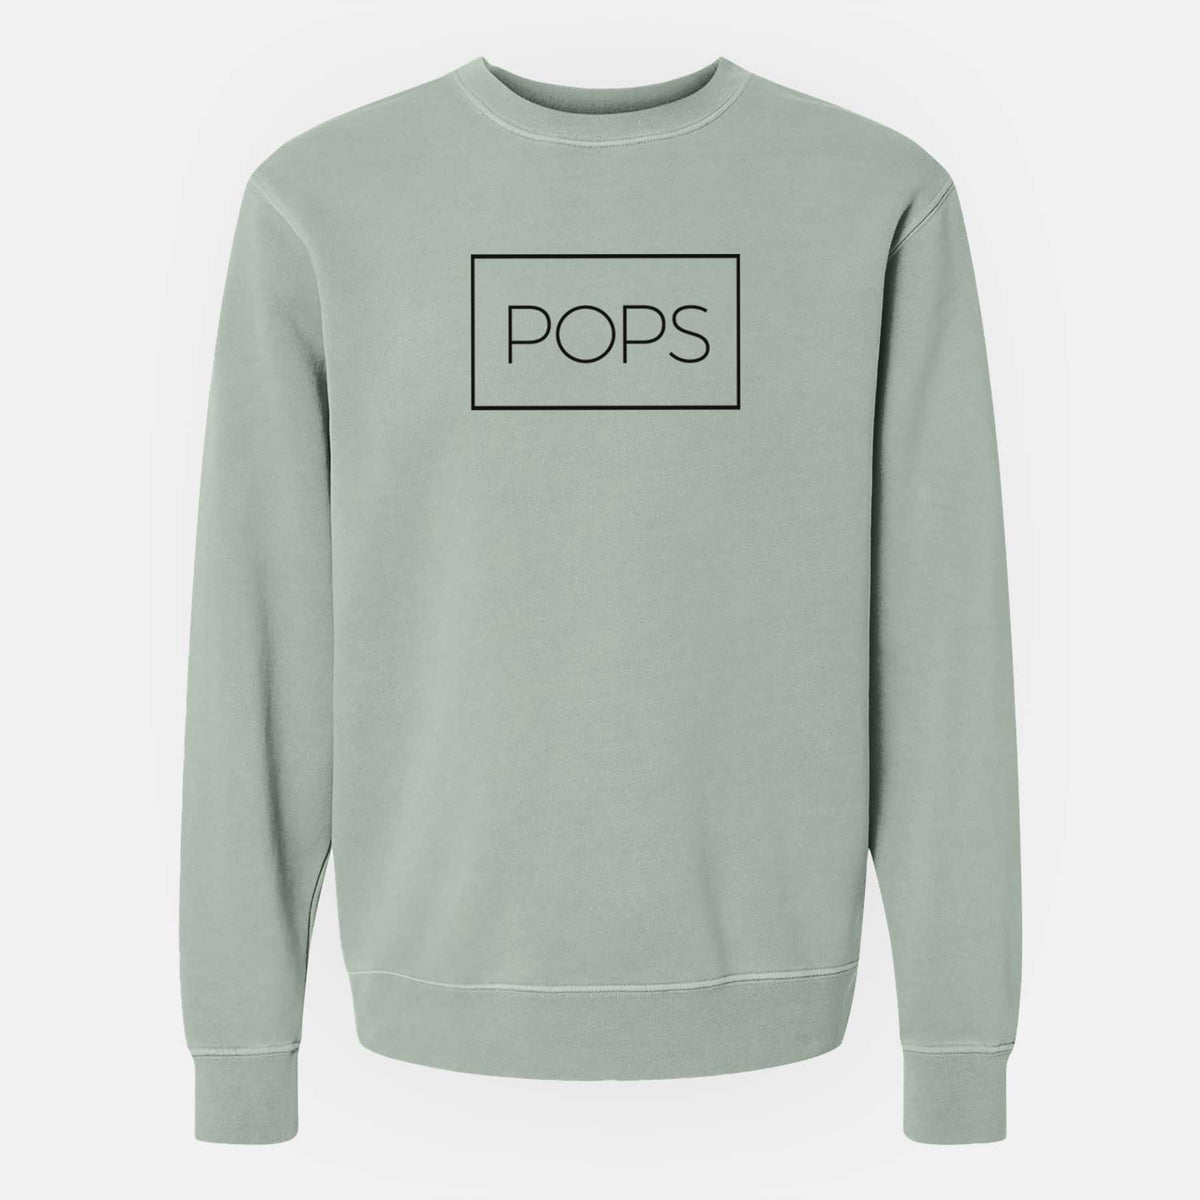 Pops Boxed 1 line - Unisex Pigment Dyed Crew Sweatshirt